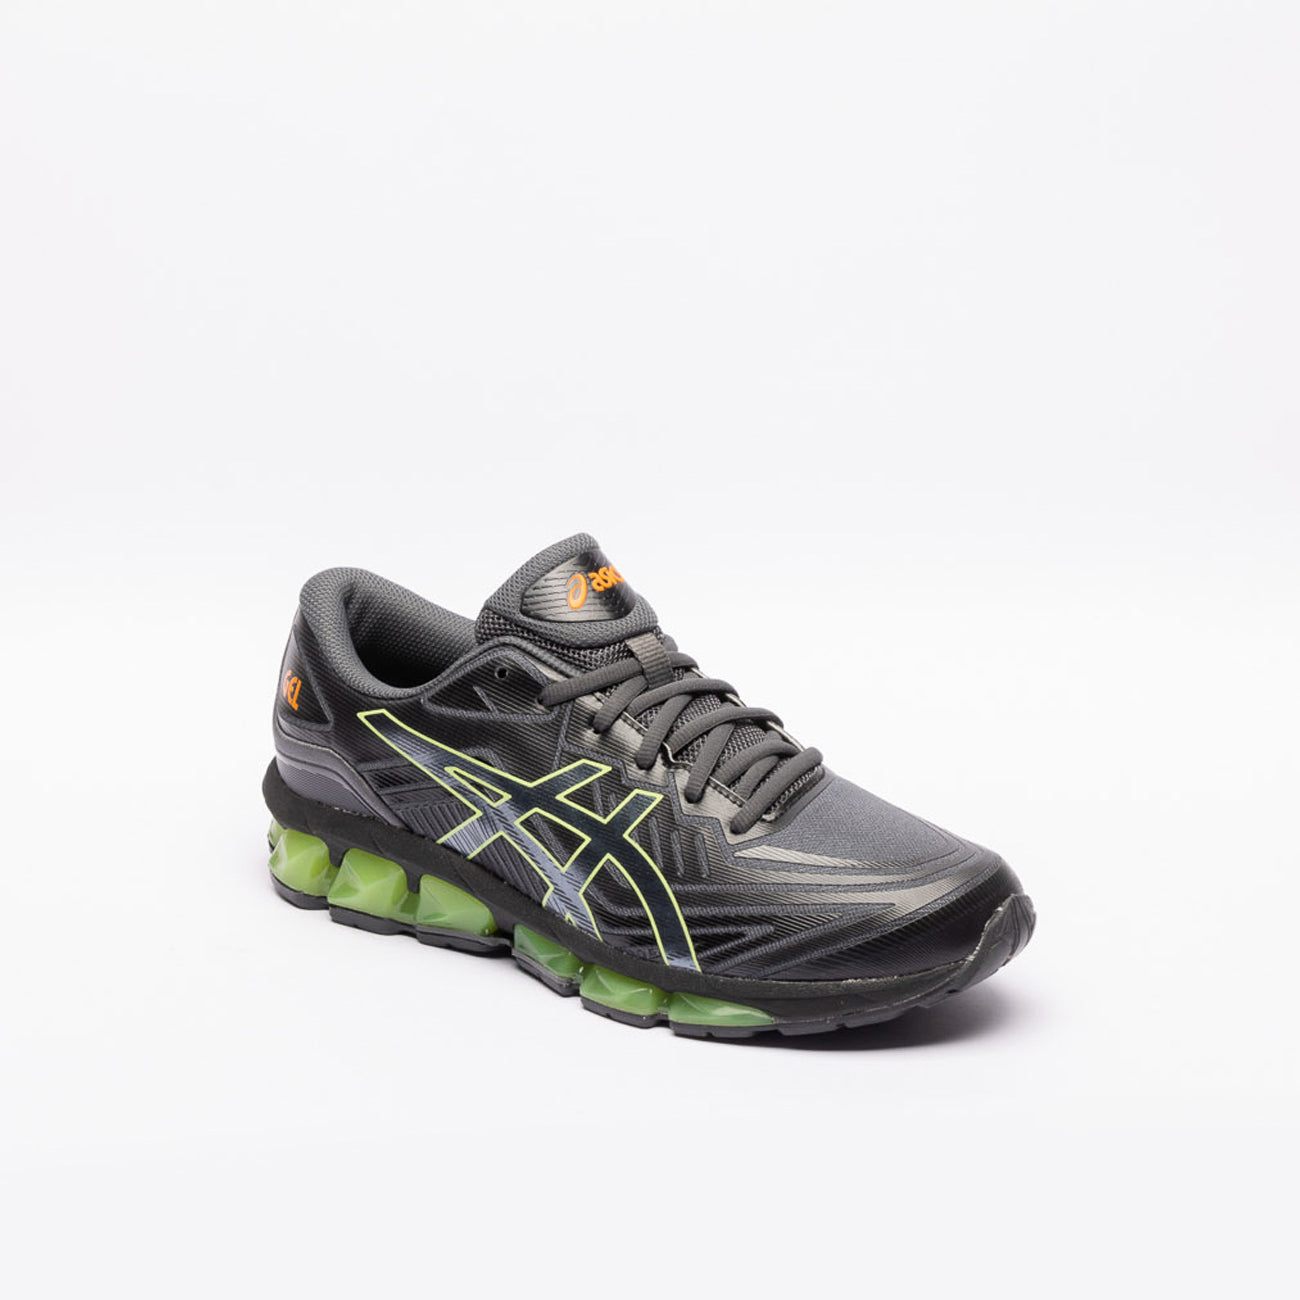 Sneaker running Asics Gel Quantum 360 VII in tessuto nero e gel verde lime